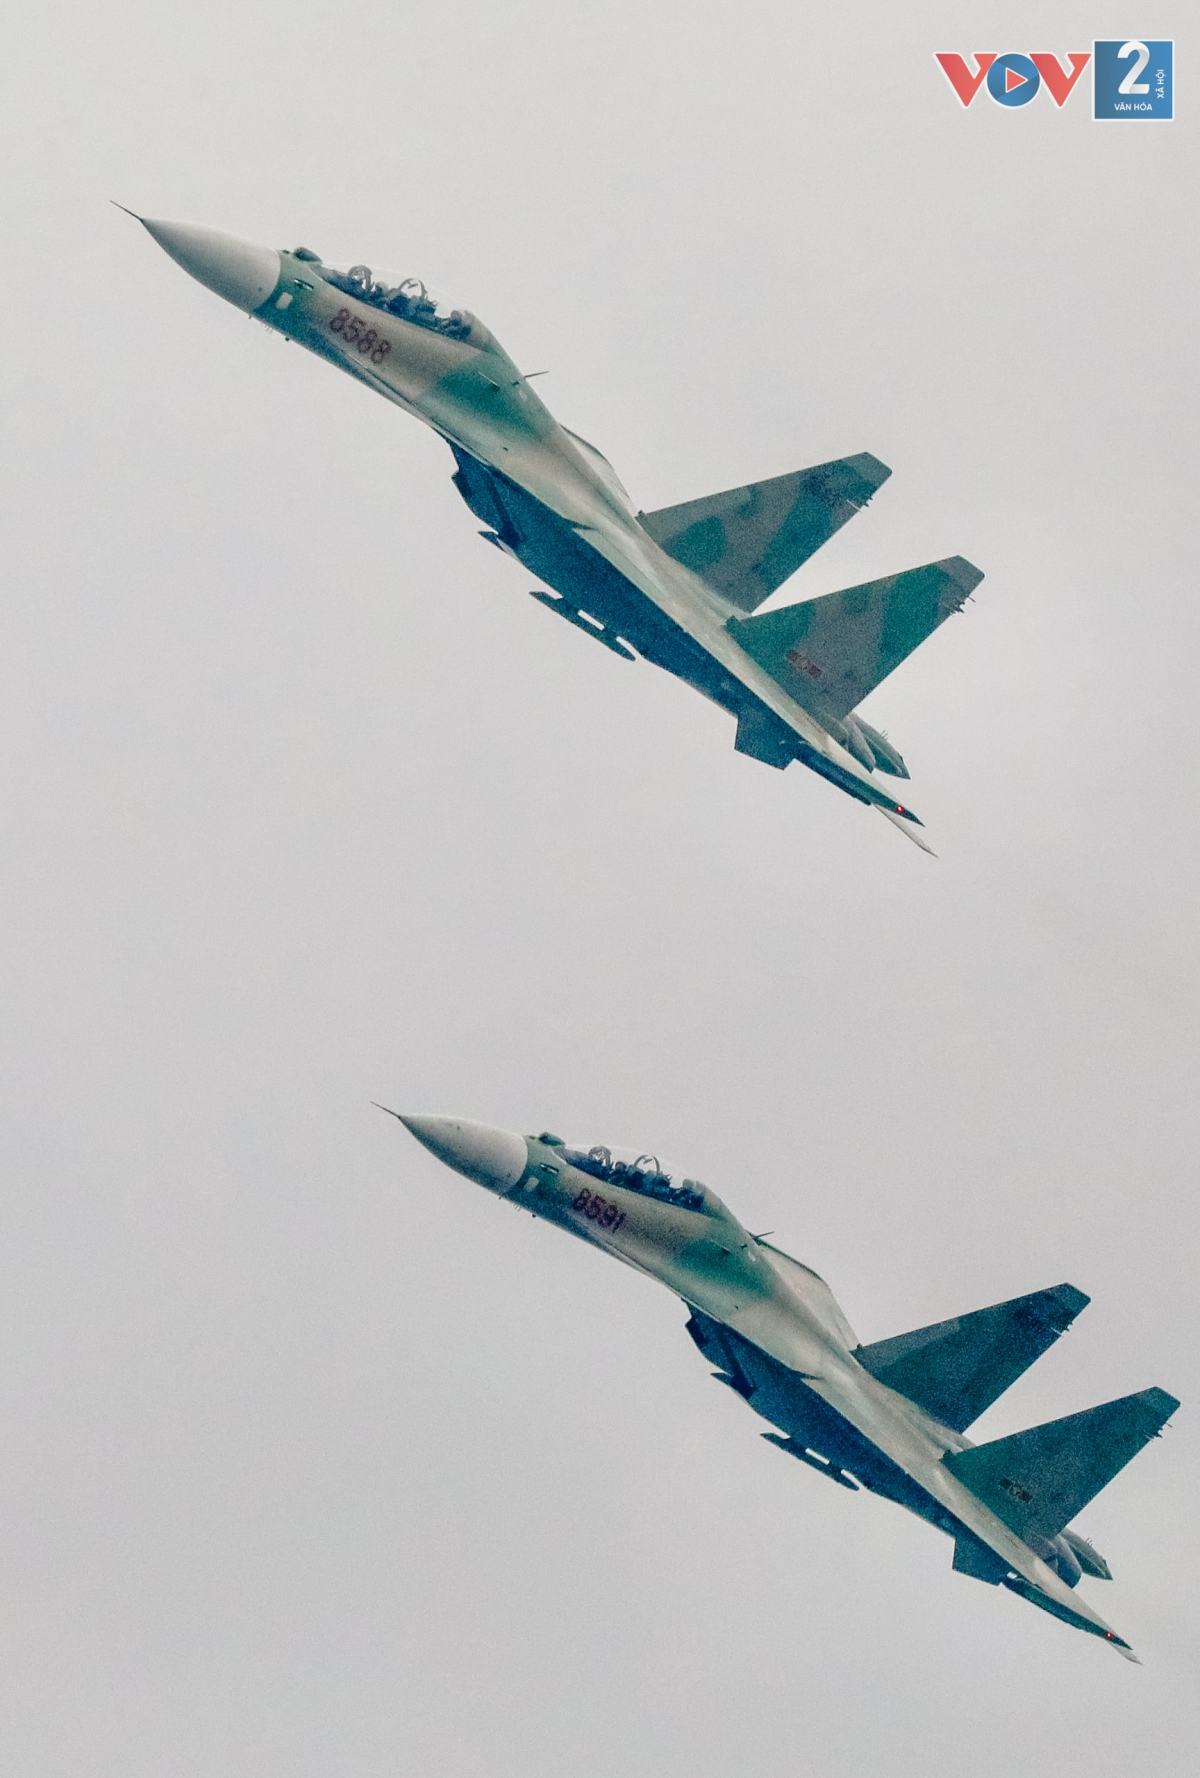 Kết thúc màn bắn đạn nhiễu là sự xuất hiện của hai chiếc Su-30MK2, các máy bay chiến đấu Su-30MK2 của Trung đoàn Không quân 927 (Sư đoàn 371) xuất phát từ sân bay Kép (Lạng Giang, Bắc Giang).